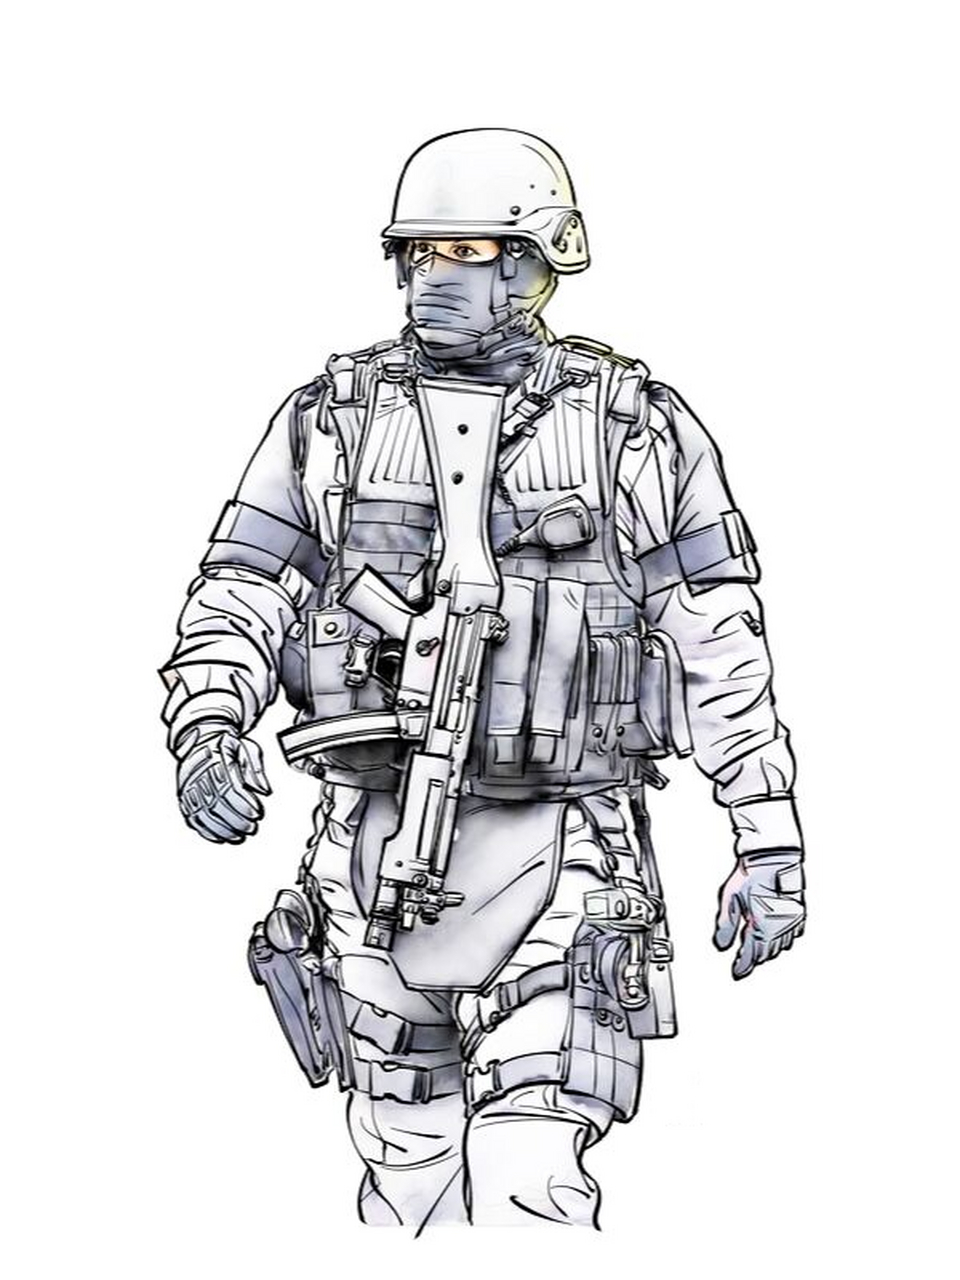 《特种部队11》 钢笔淡彩人物画 白描 速写